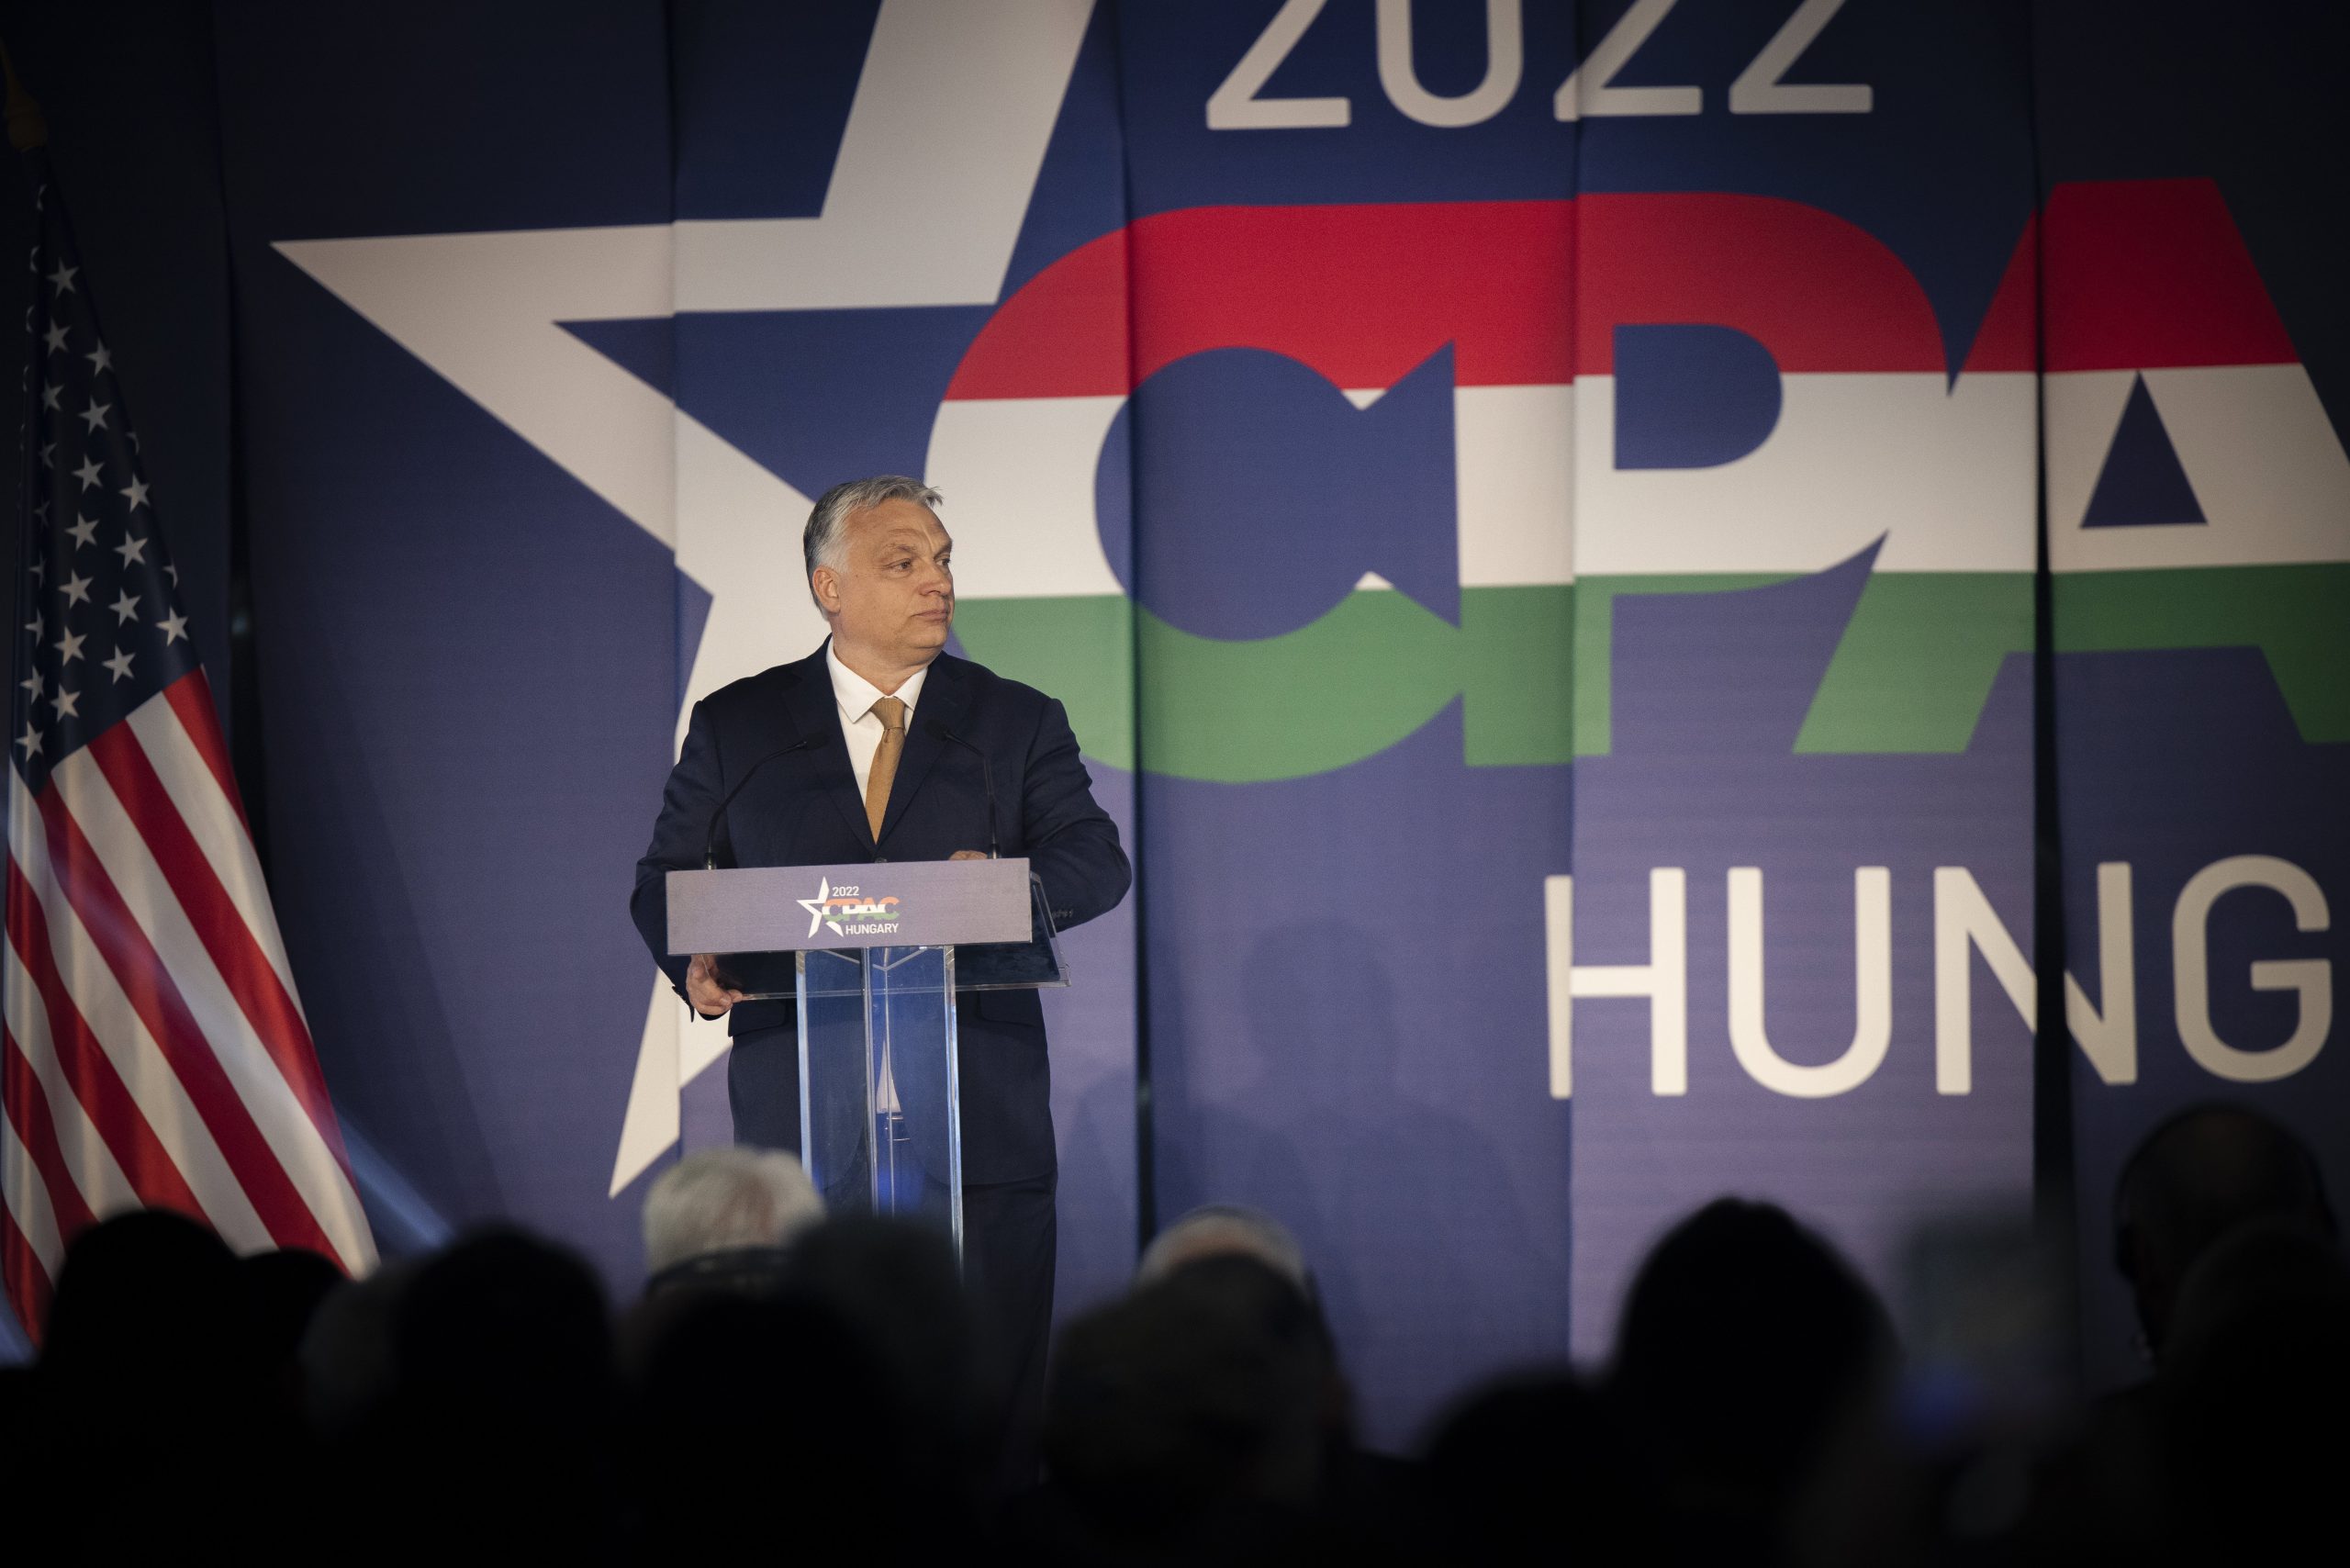 Die weltweit führende Versammlung der Konservativen kehrt nach Budapest zurück